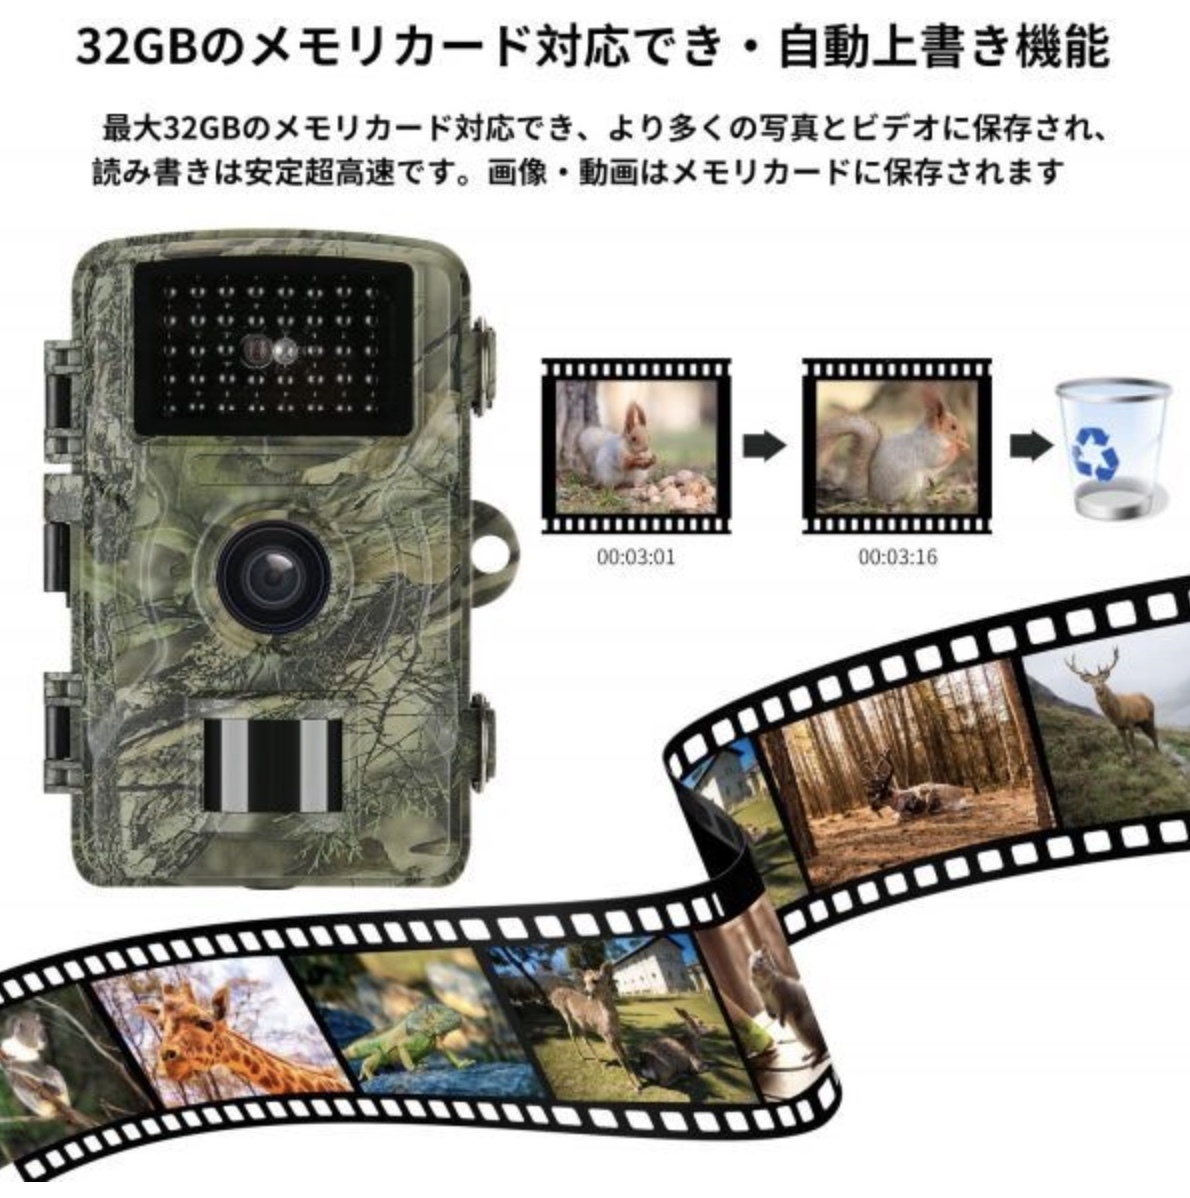  камера системы безопасности Trail камера инфракрасные лучи парковка поле пустой земля японский язык инструкция иметь 32gb Mini SD карта сервис полный HD водонепроницаемый электропроводка не необходимо 